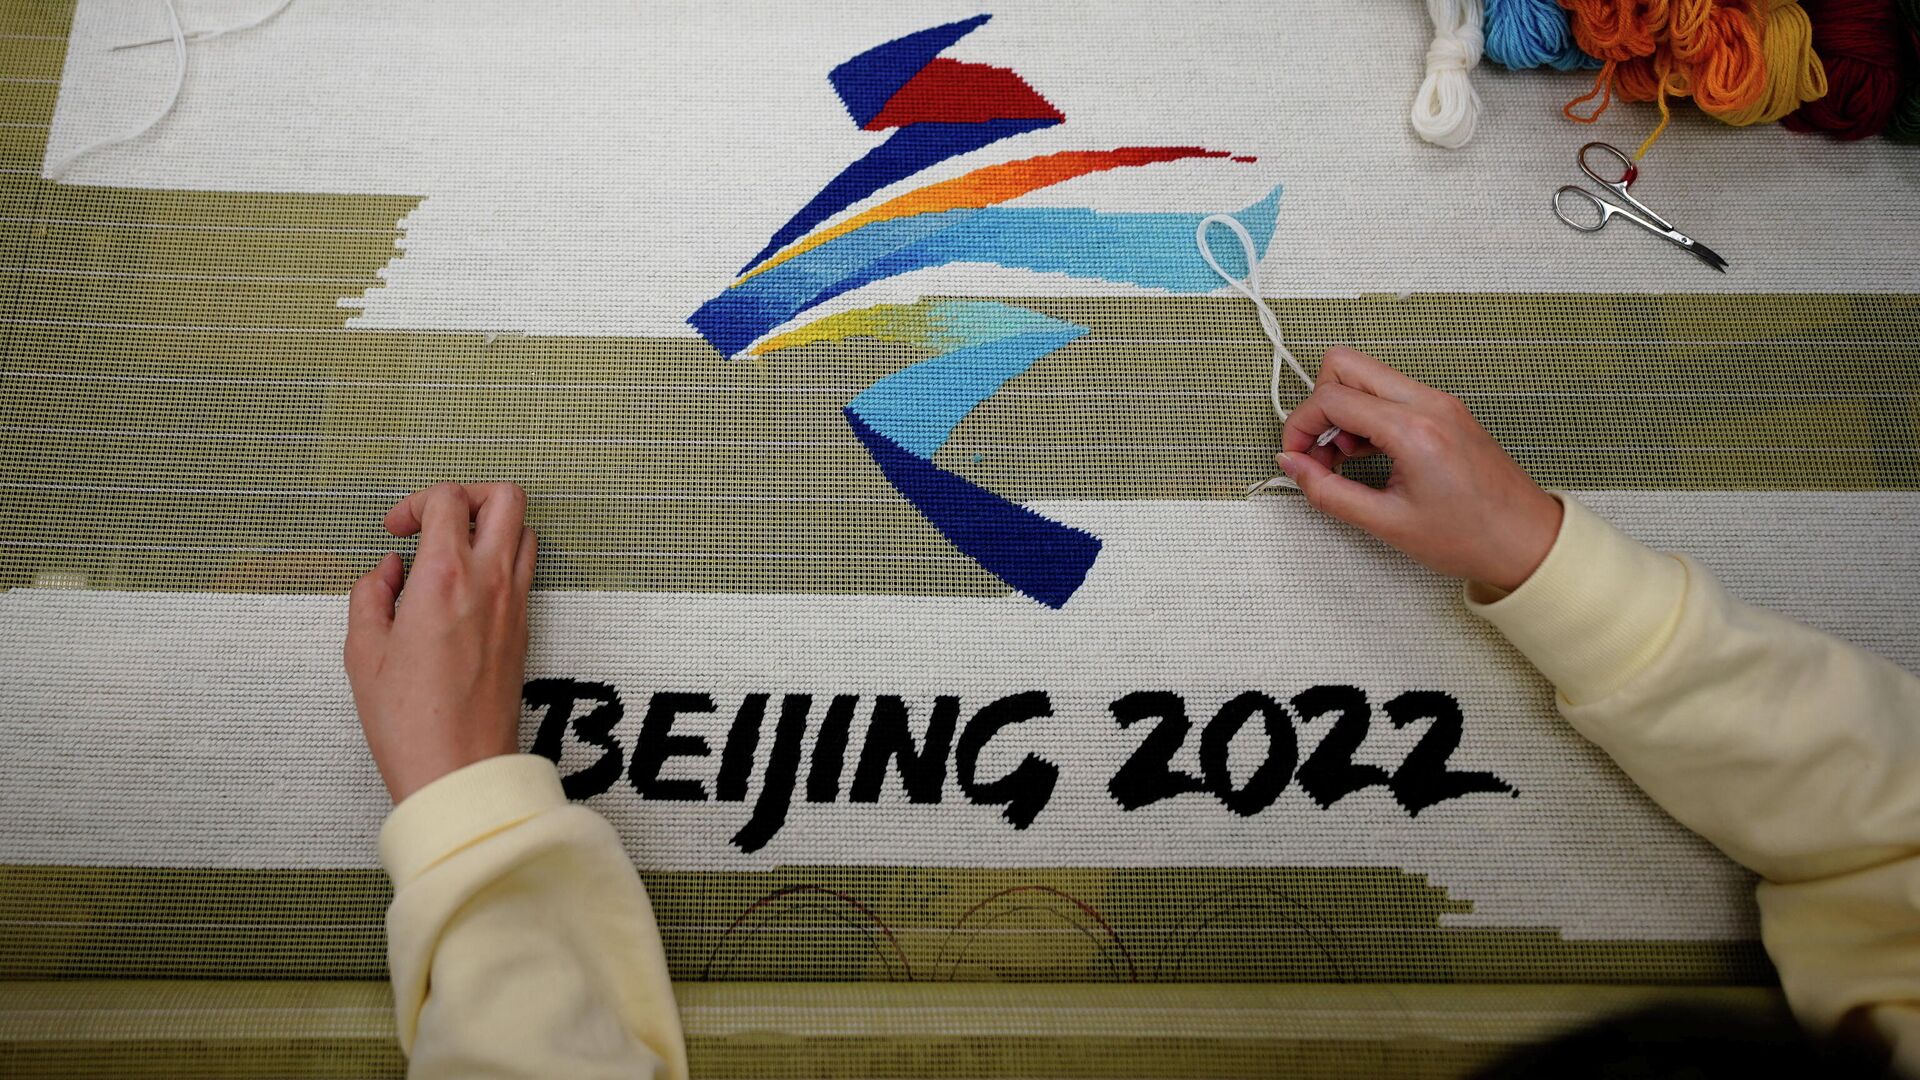 El logotipo de los Juegos Olímpicos de Pekín 2022 - Sputnik Mundo, 1920, 10.02.2022